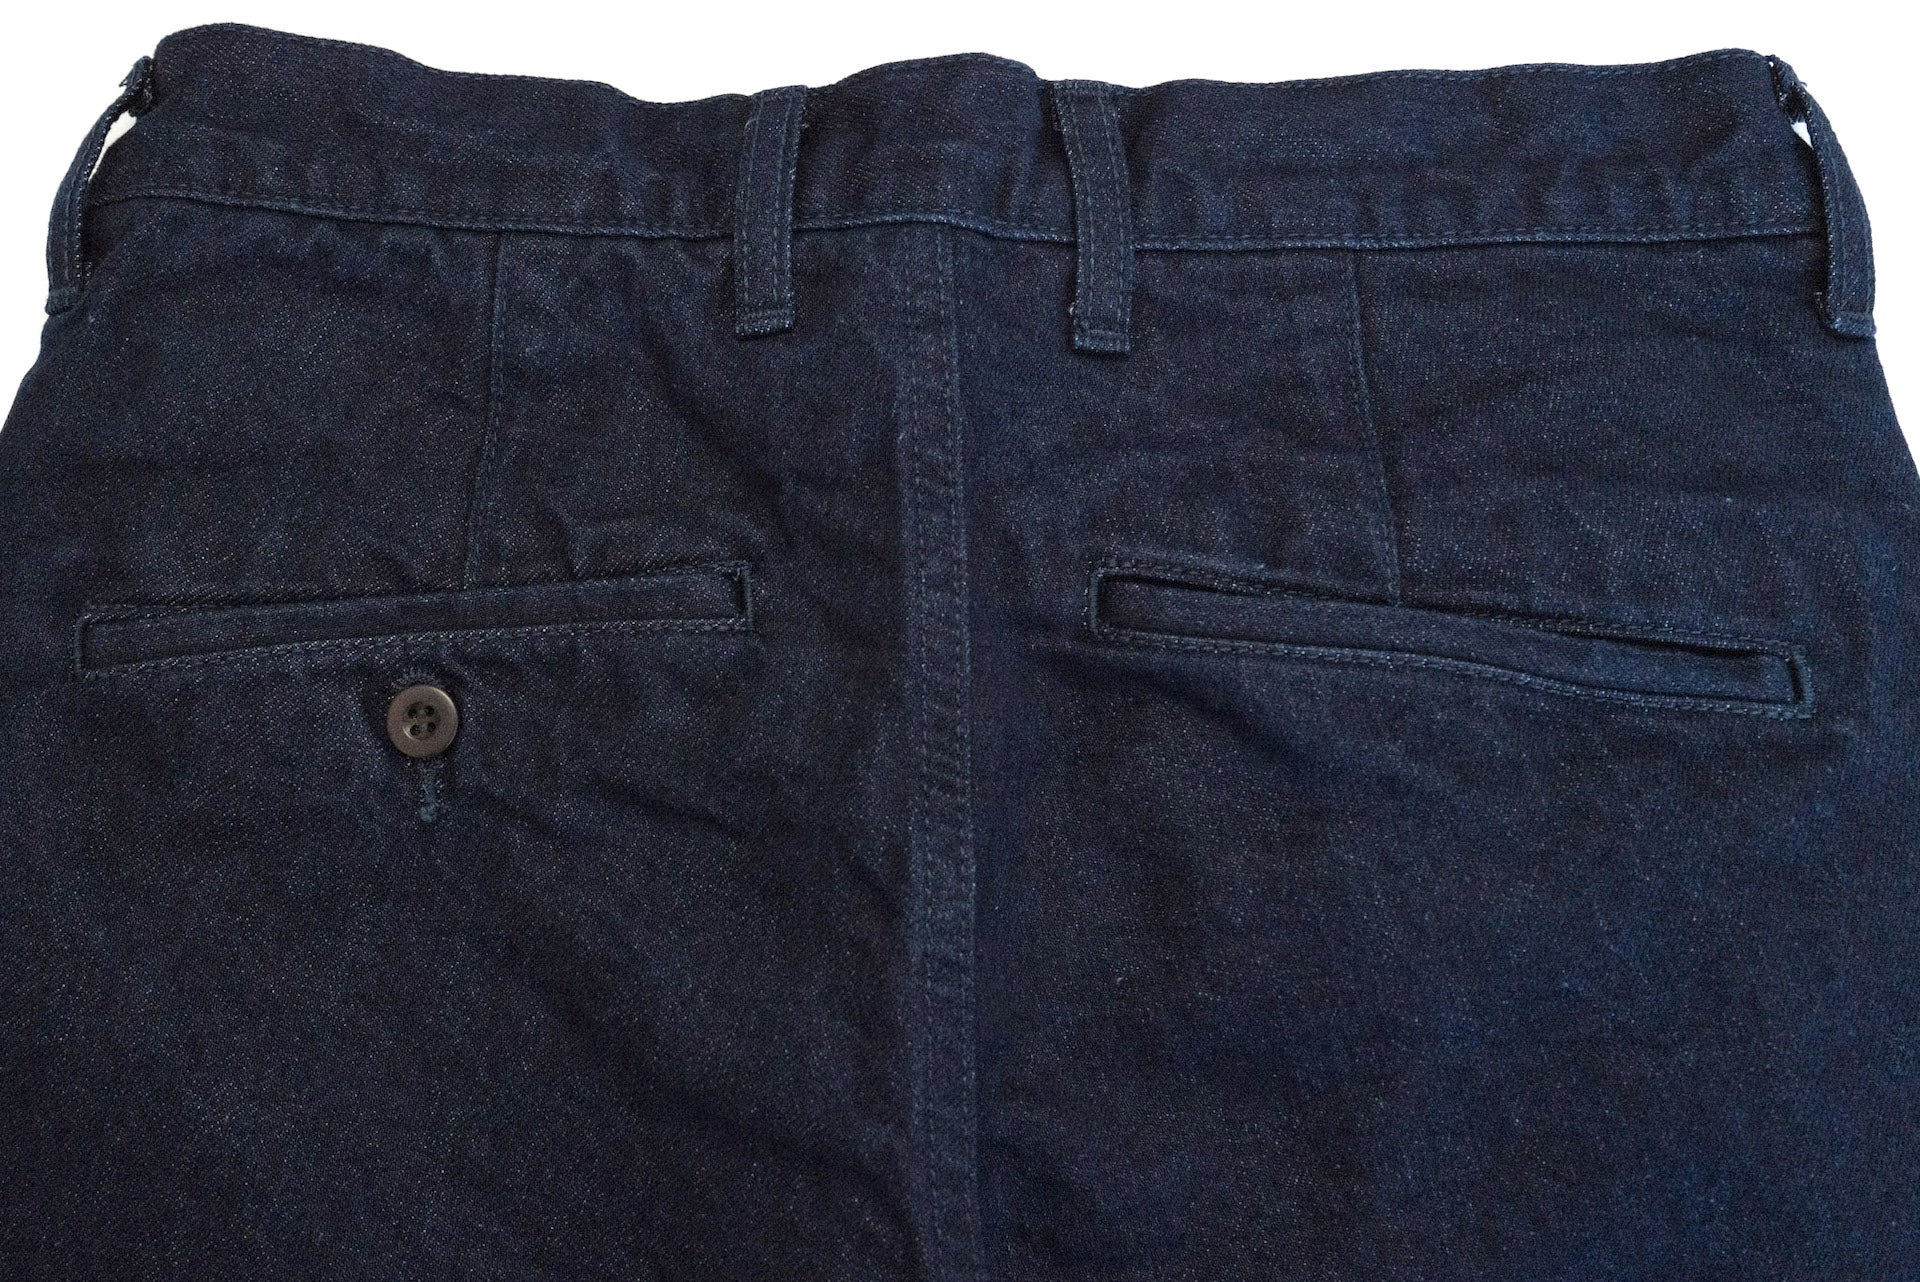 Japan Blue 13.5oz Indigo Dyed "Kouzo" Shorts